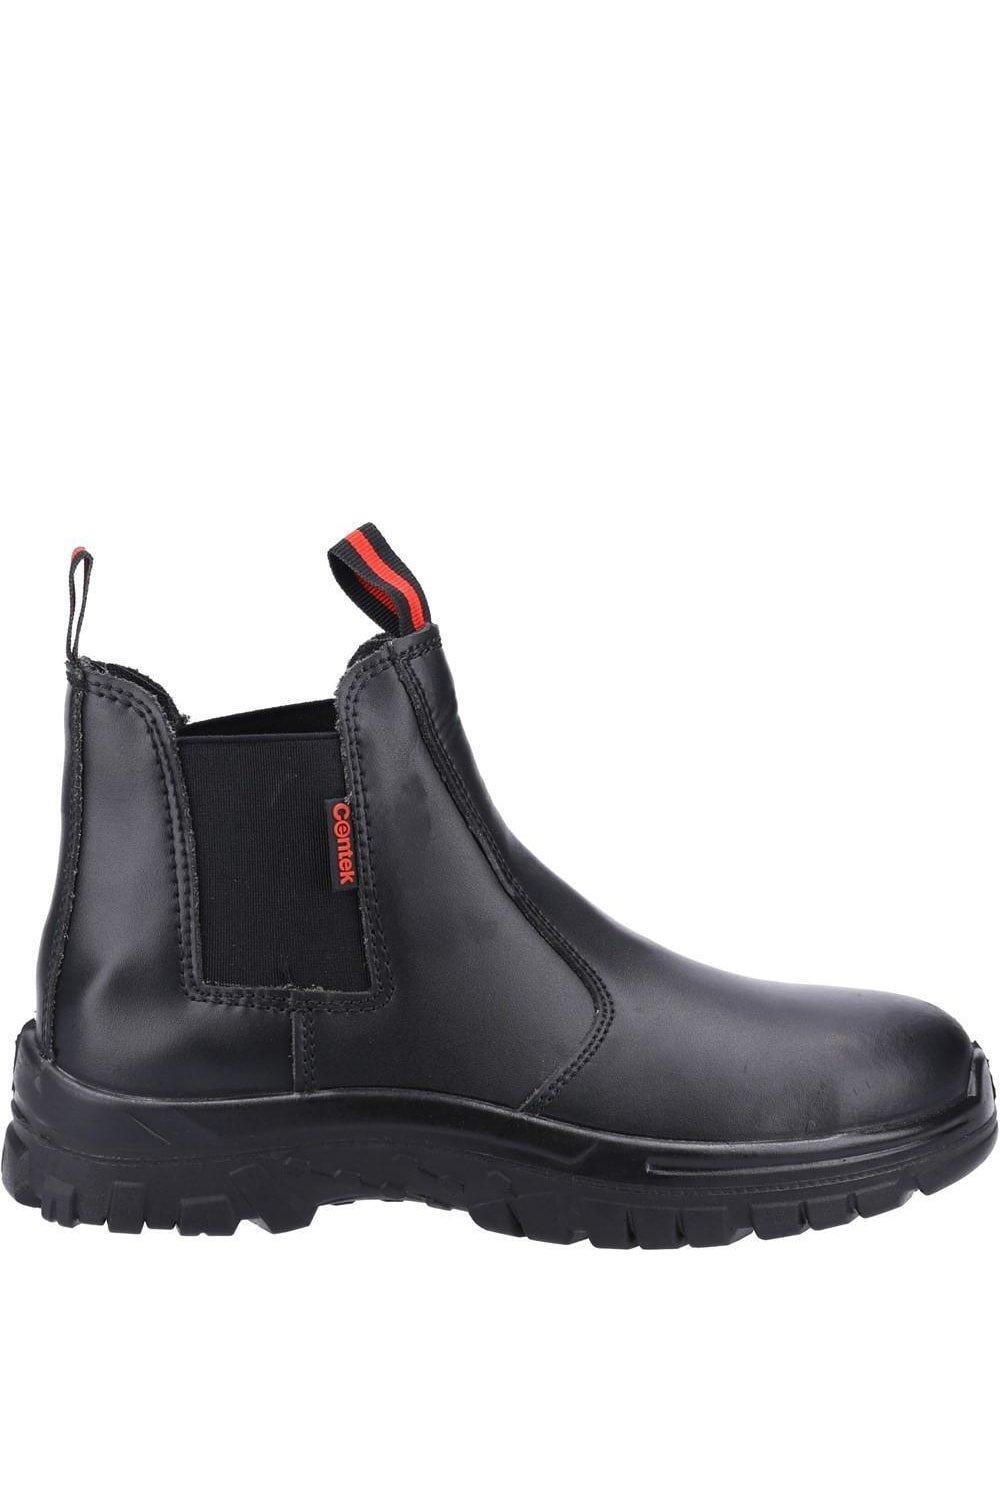 FS316 S1 Кожаные защитные ботинки Centek, черный